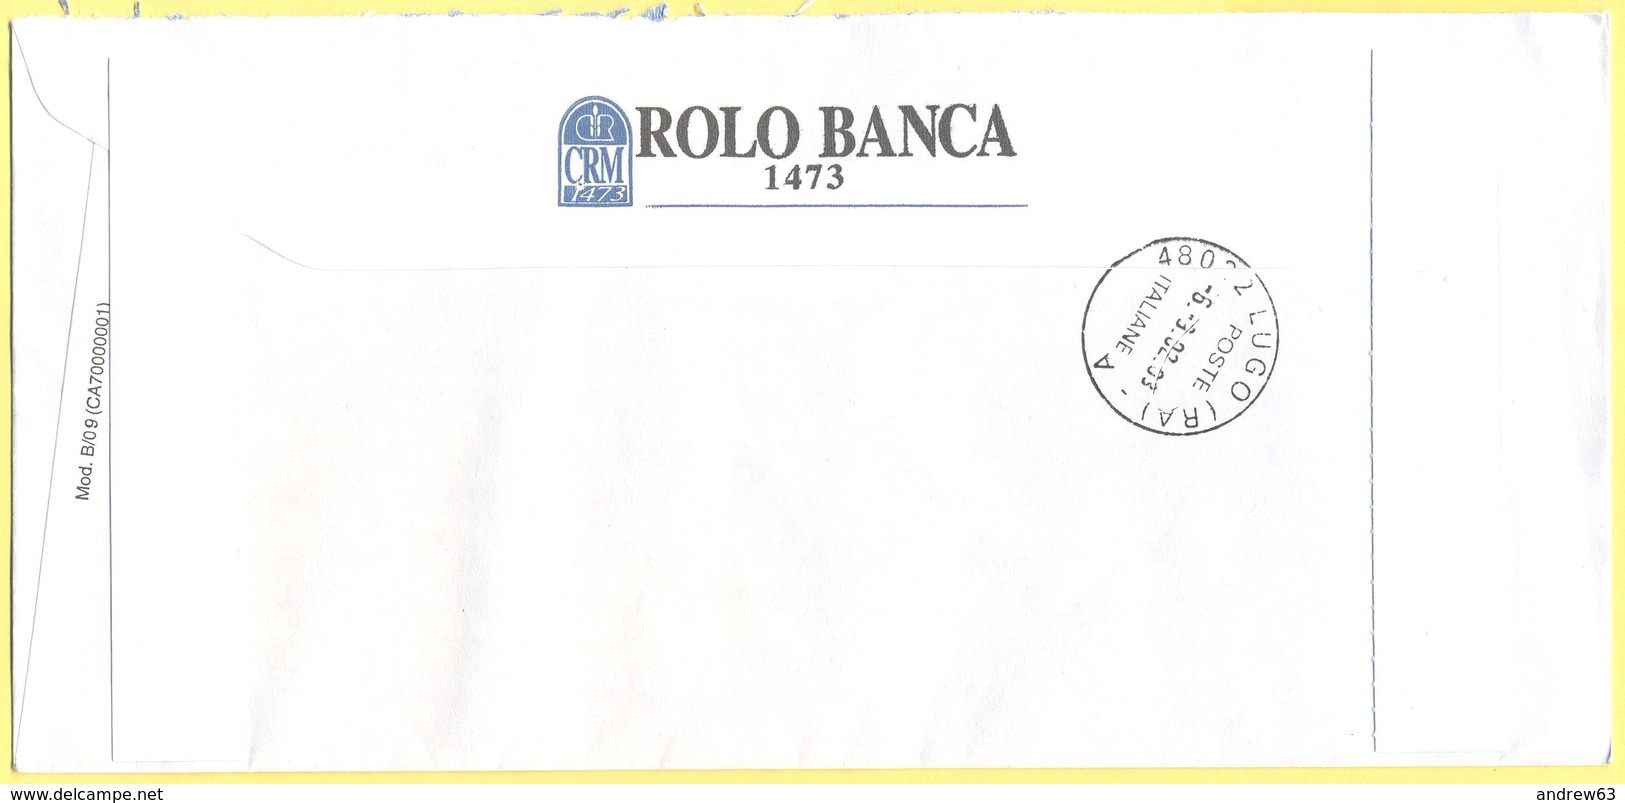 ITALIA - ITALY - ITALIE - 2002 - 002,99€ EMA, Red Cancel - Rolo Banca 1473 - Raccomandata A.R. - Viaggiata Da Bologna - Macchine Per Obliterare (EMA)